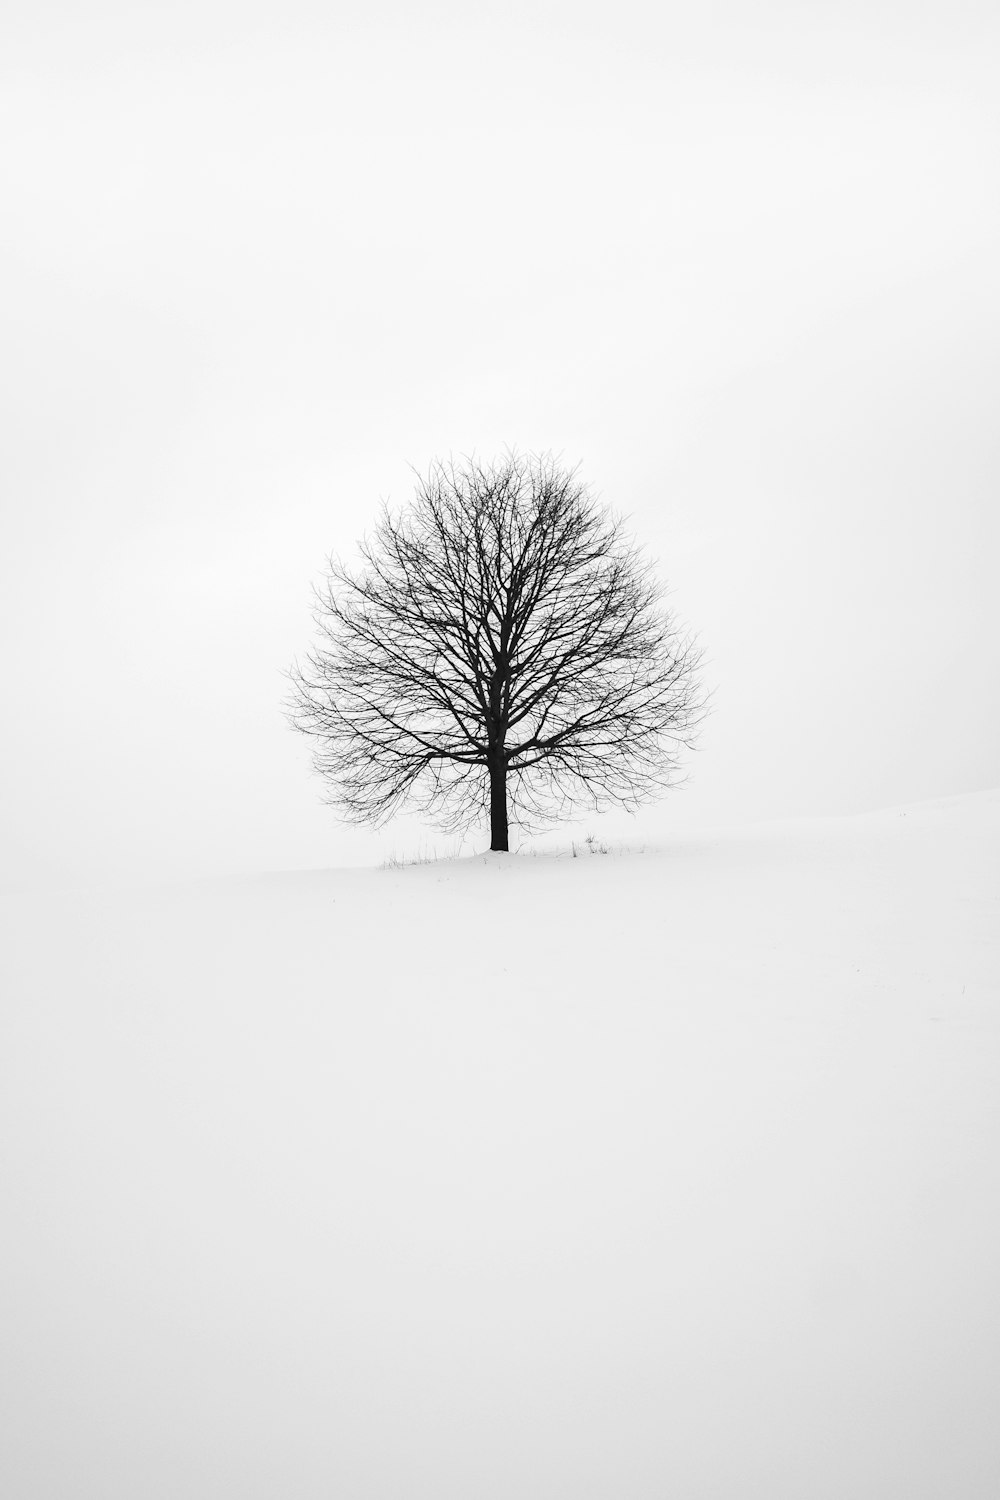 Fotografía de árbol